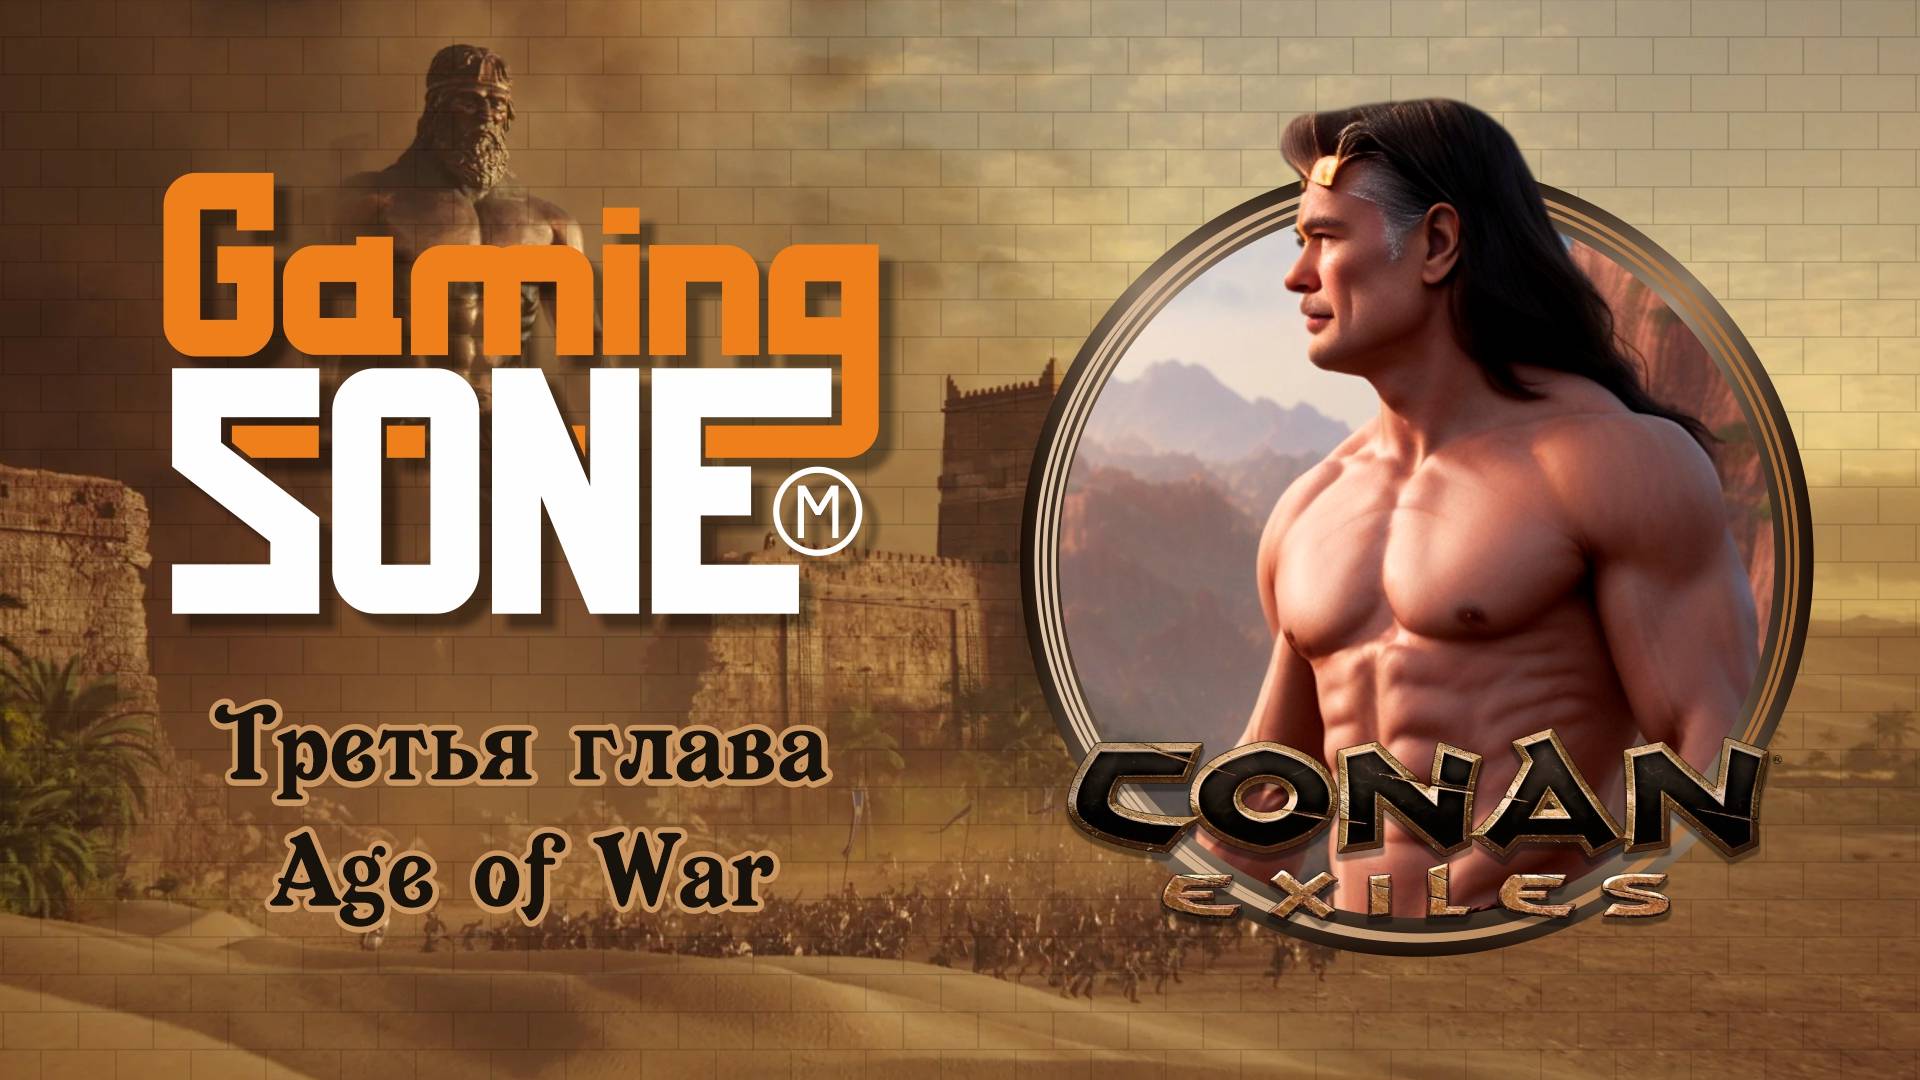 Conan exiles. Продолжение путешествия в мире Конана.